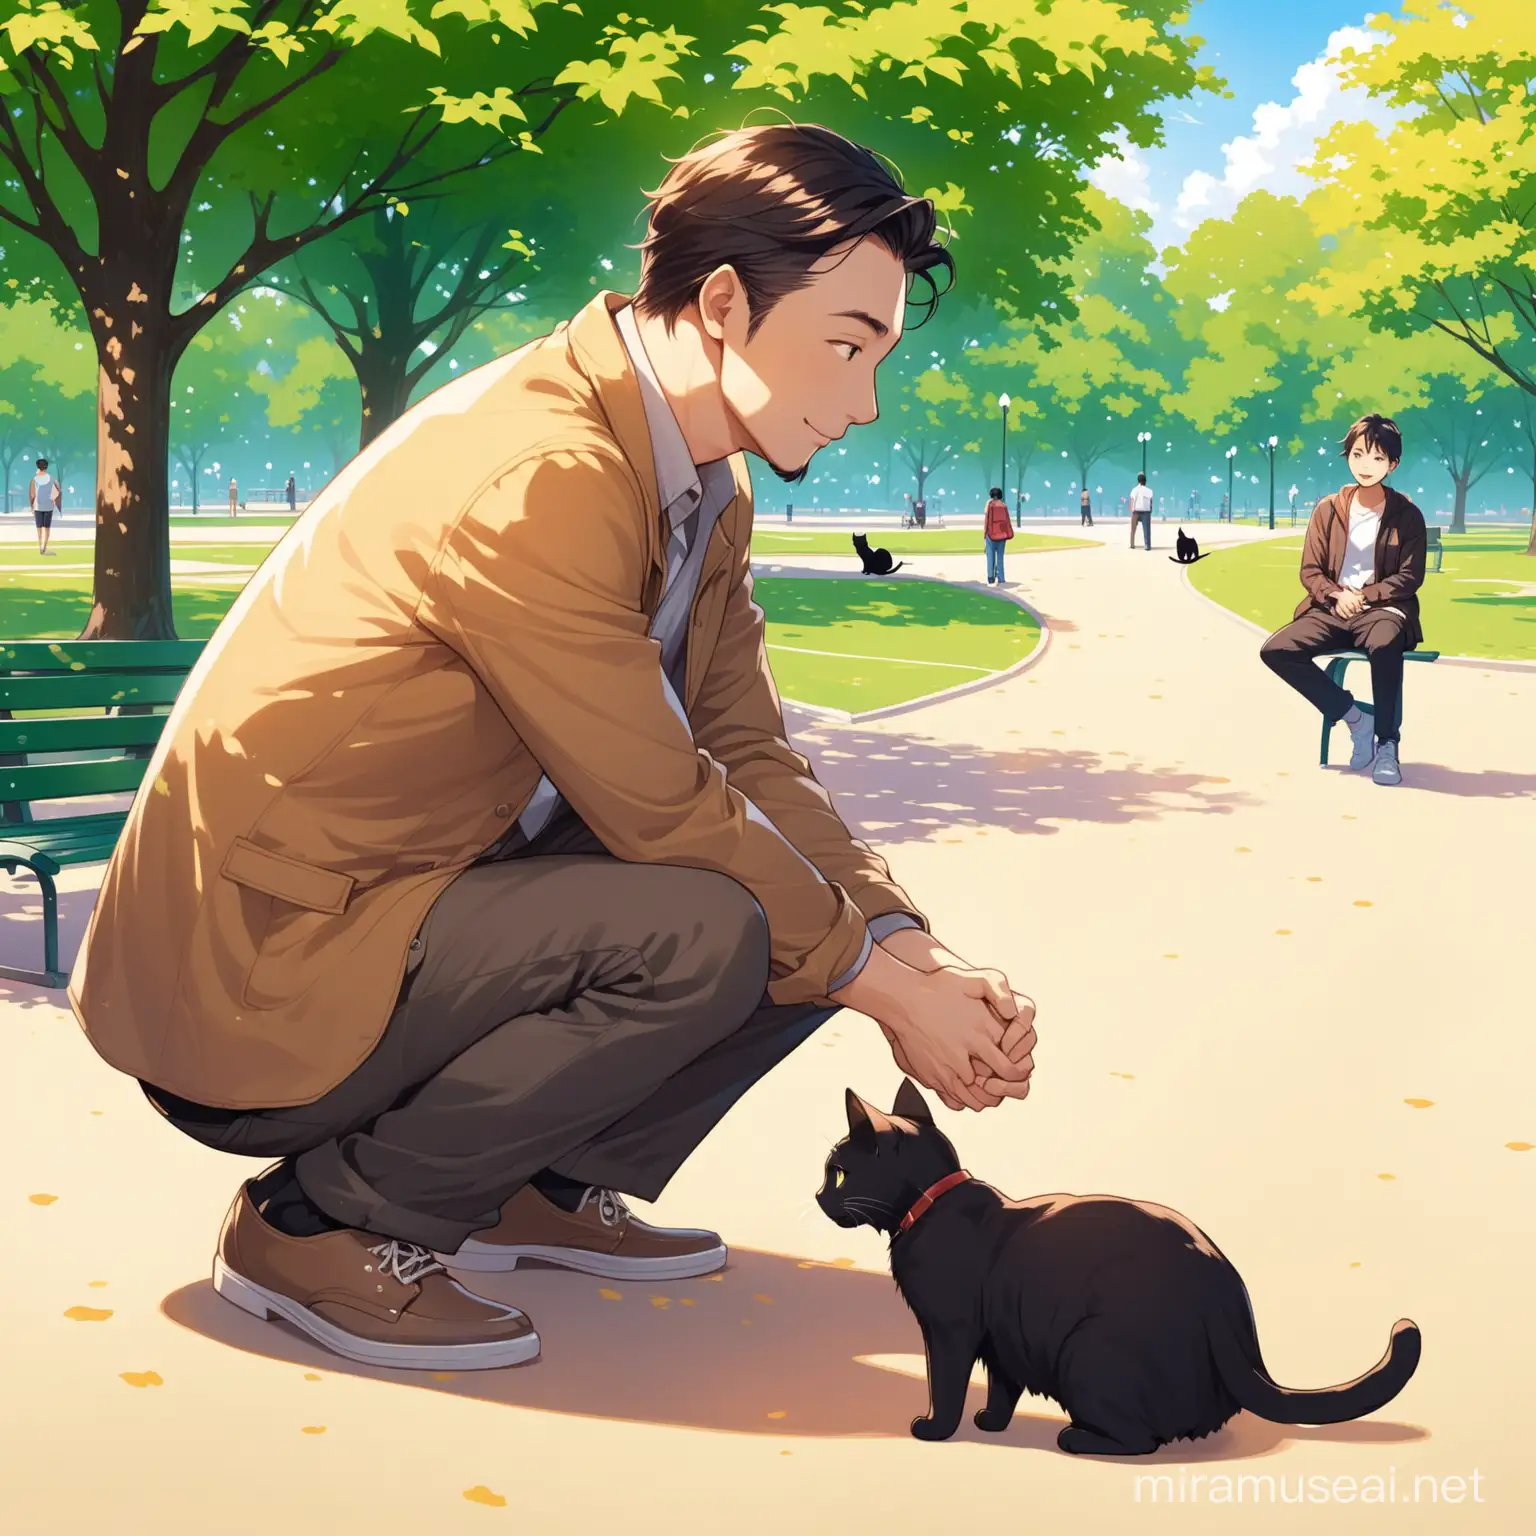 Man Meeting a Curious Cat at the Park